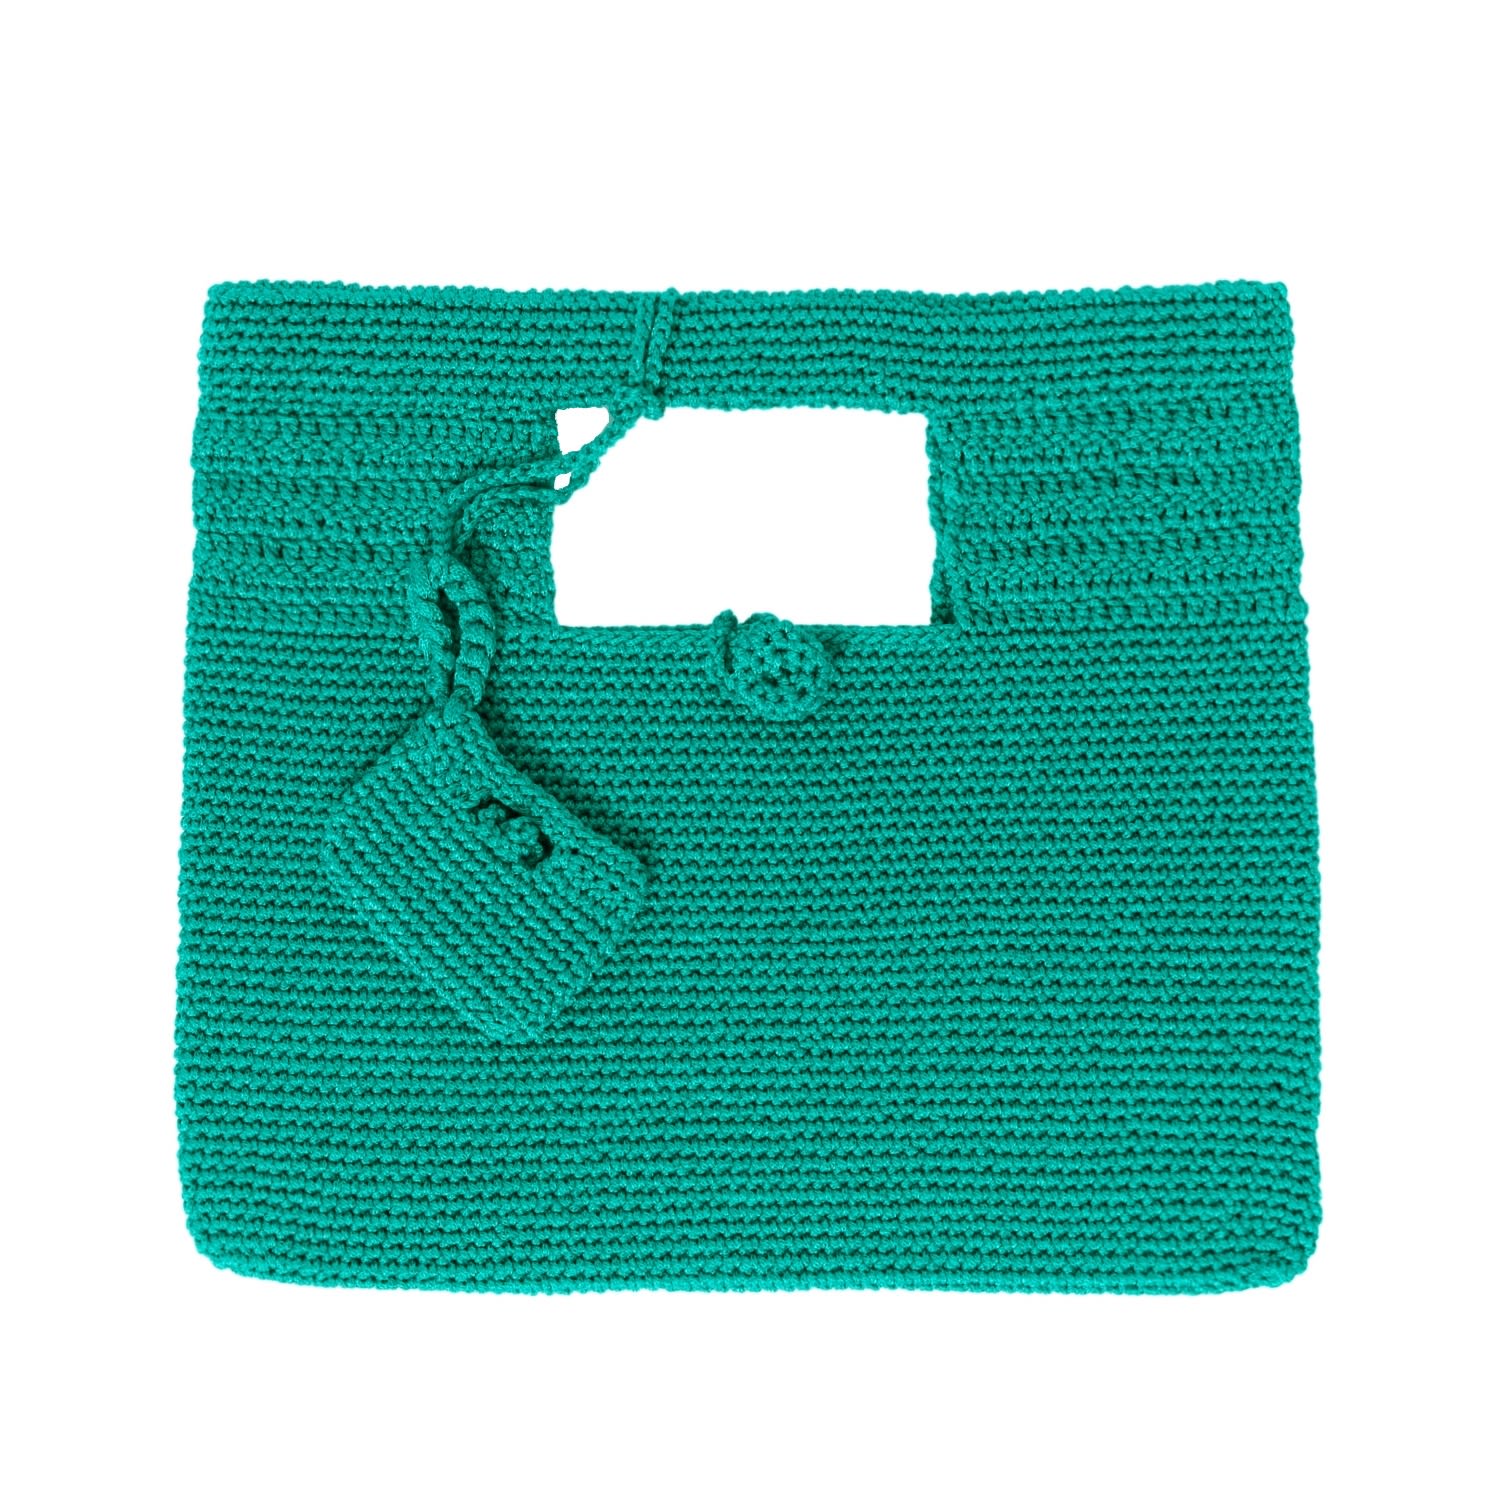 N'onat Women's Santorini Crochet Bag In Green